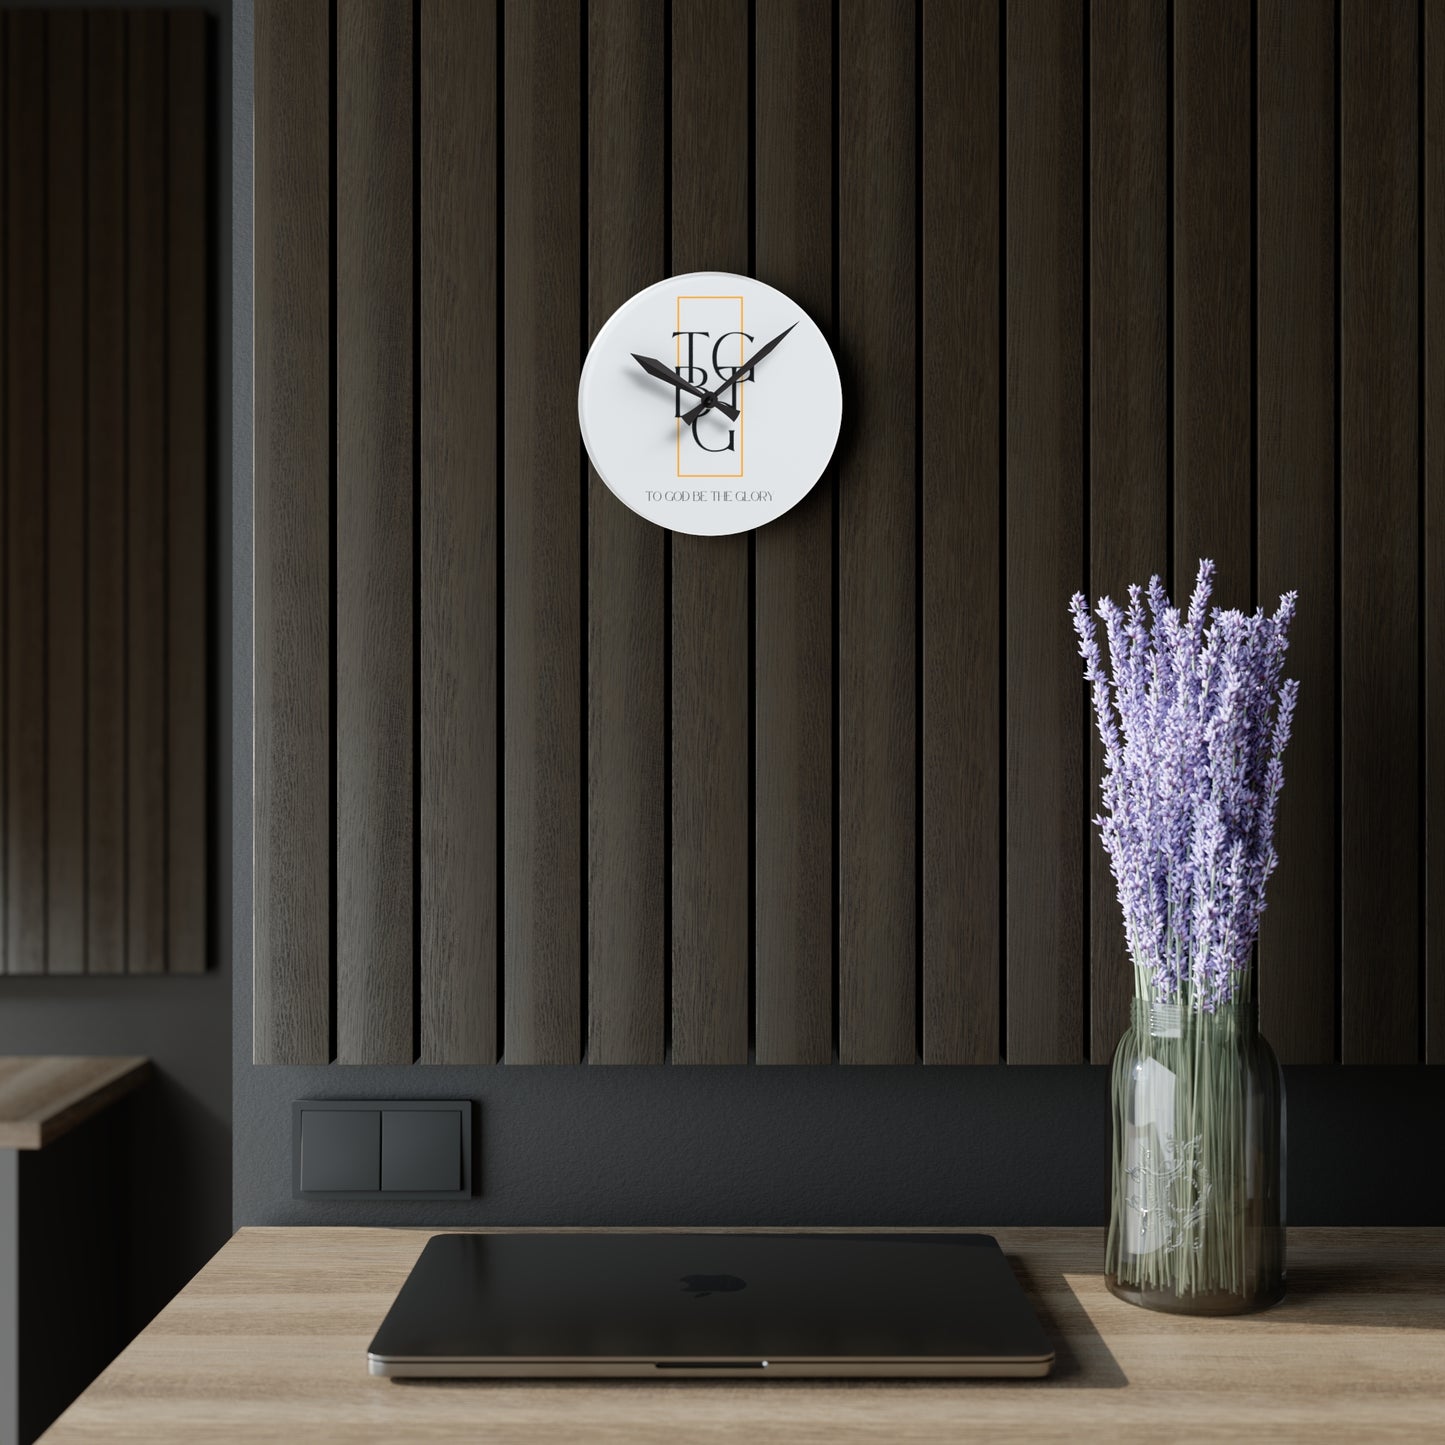 TGBTG Acrylic Wall Clock